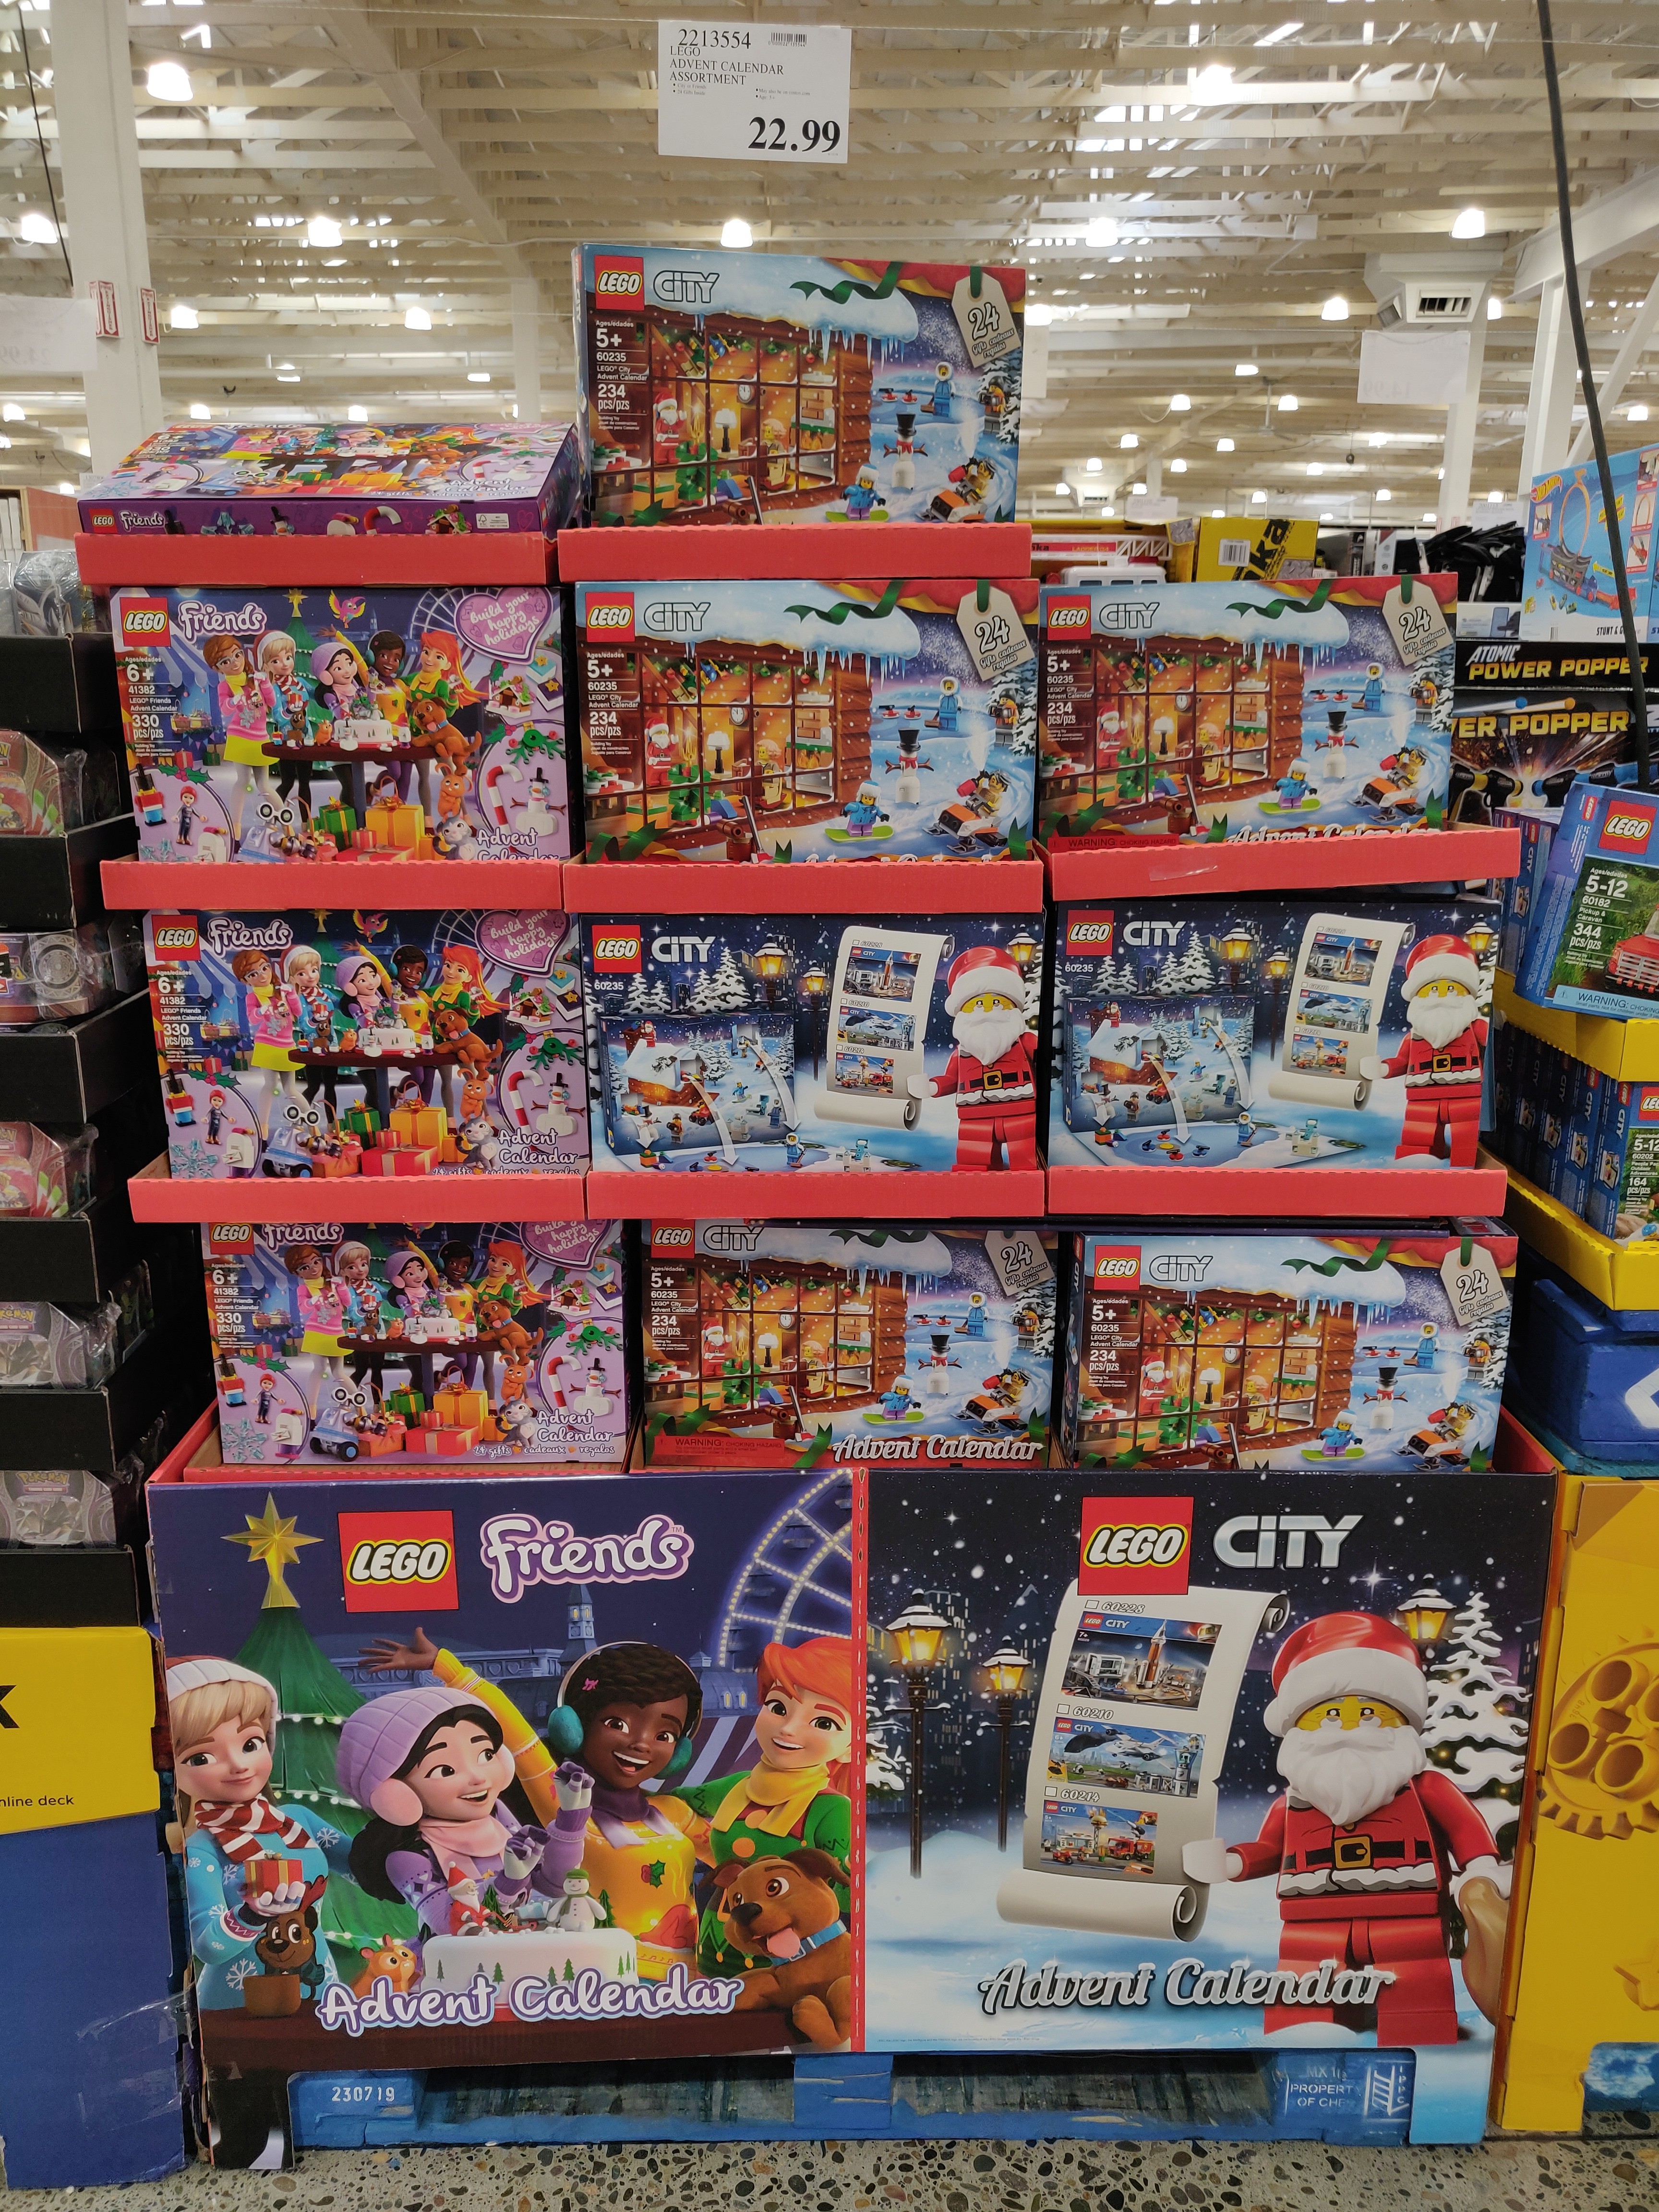 2019 Lego Advent Calendar 22.99 Costco (in store)